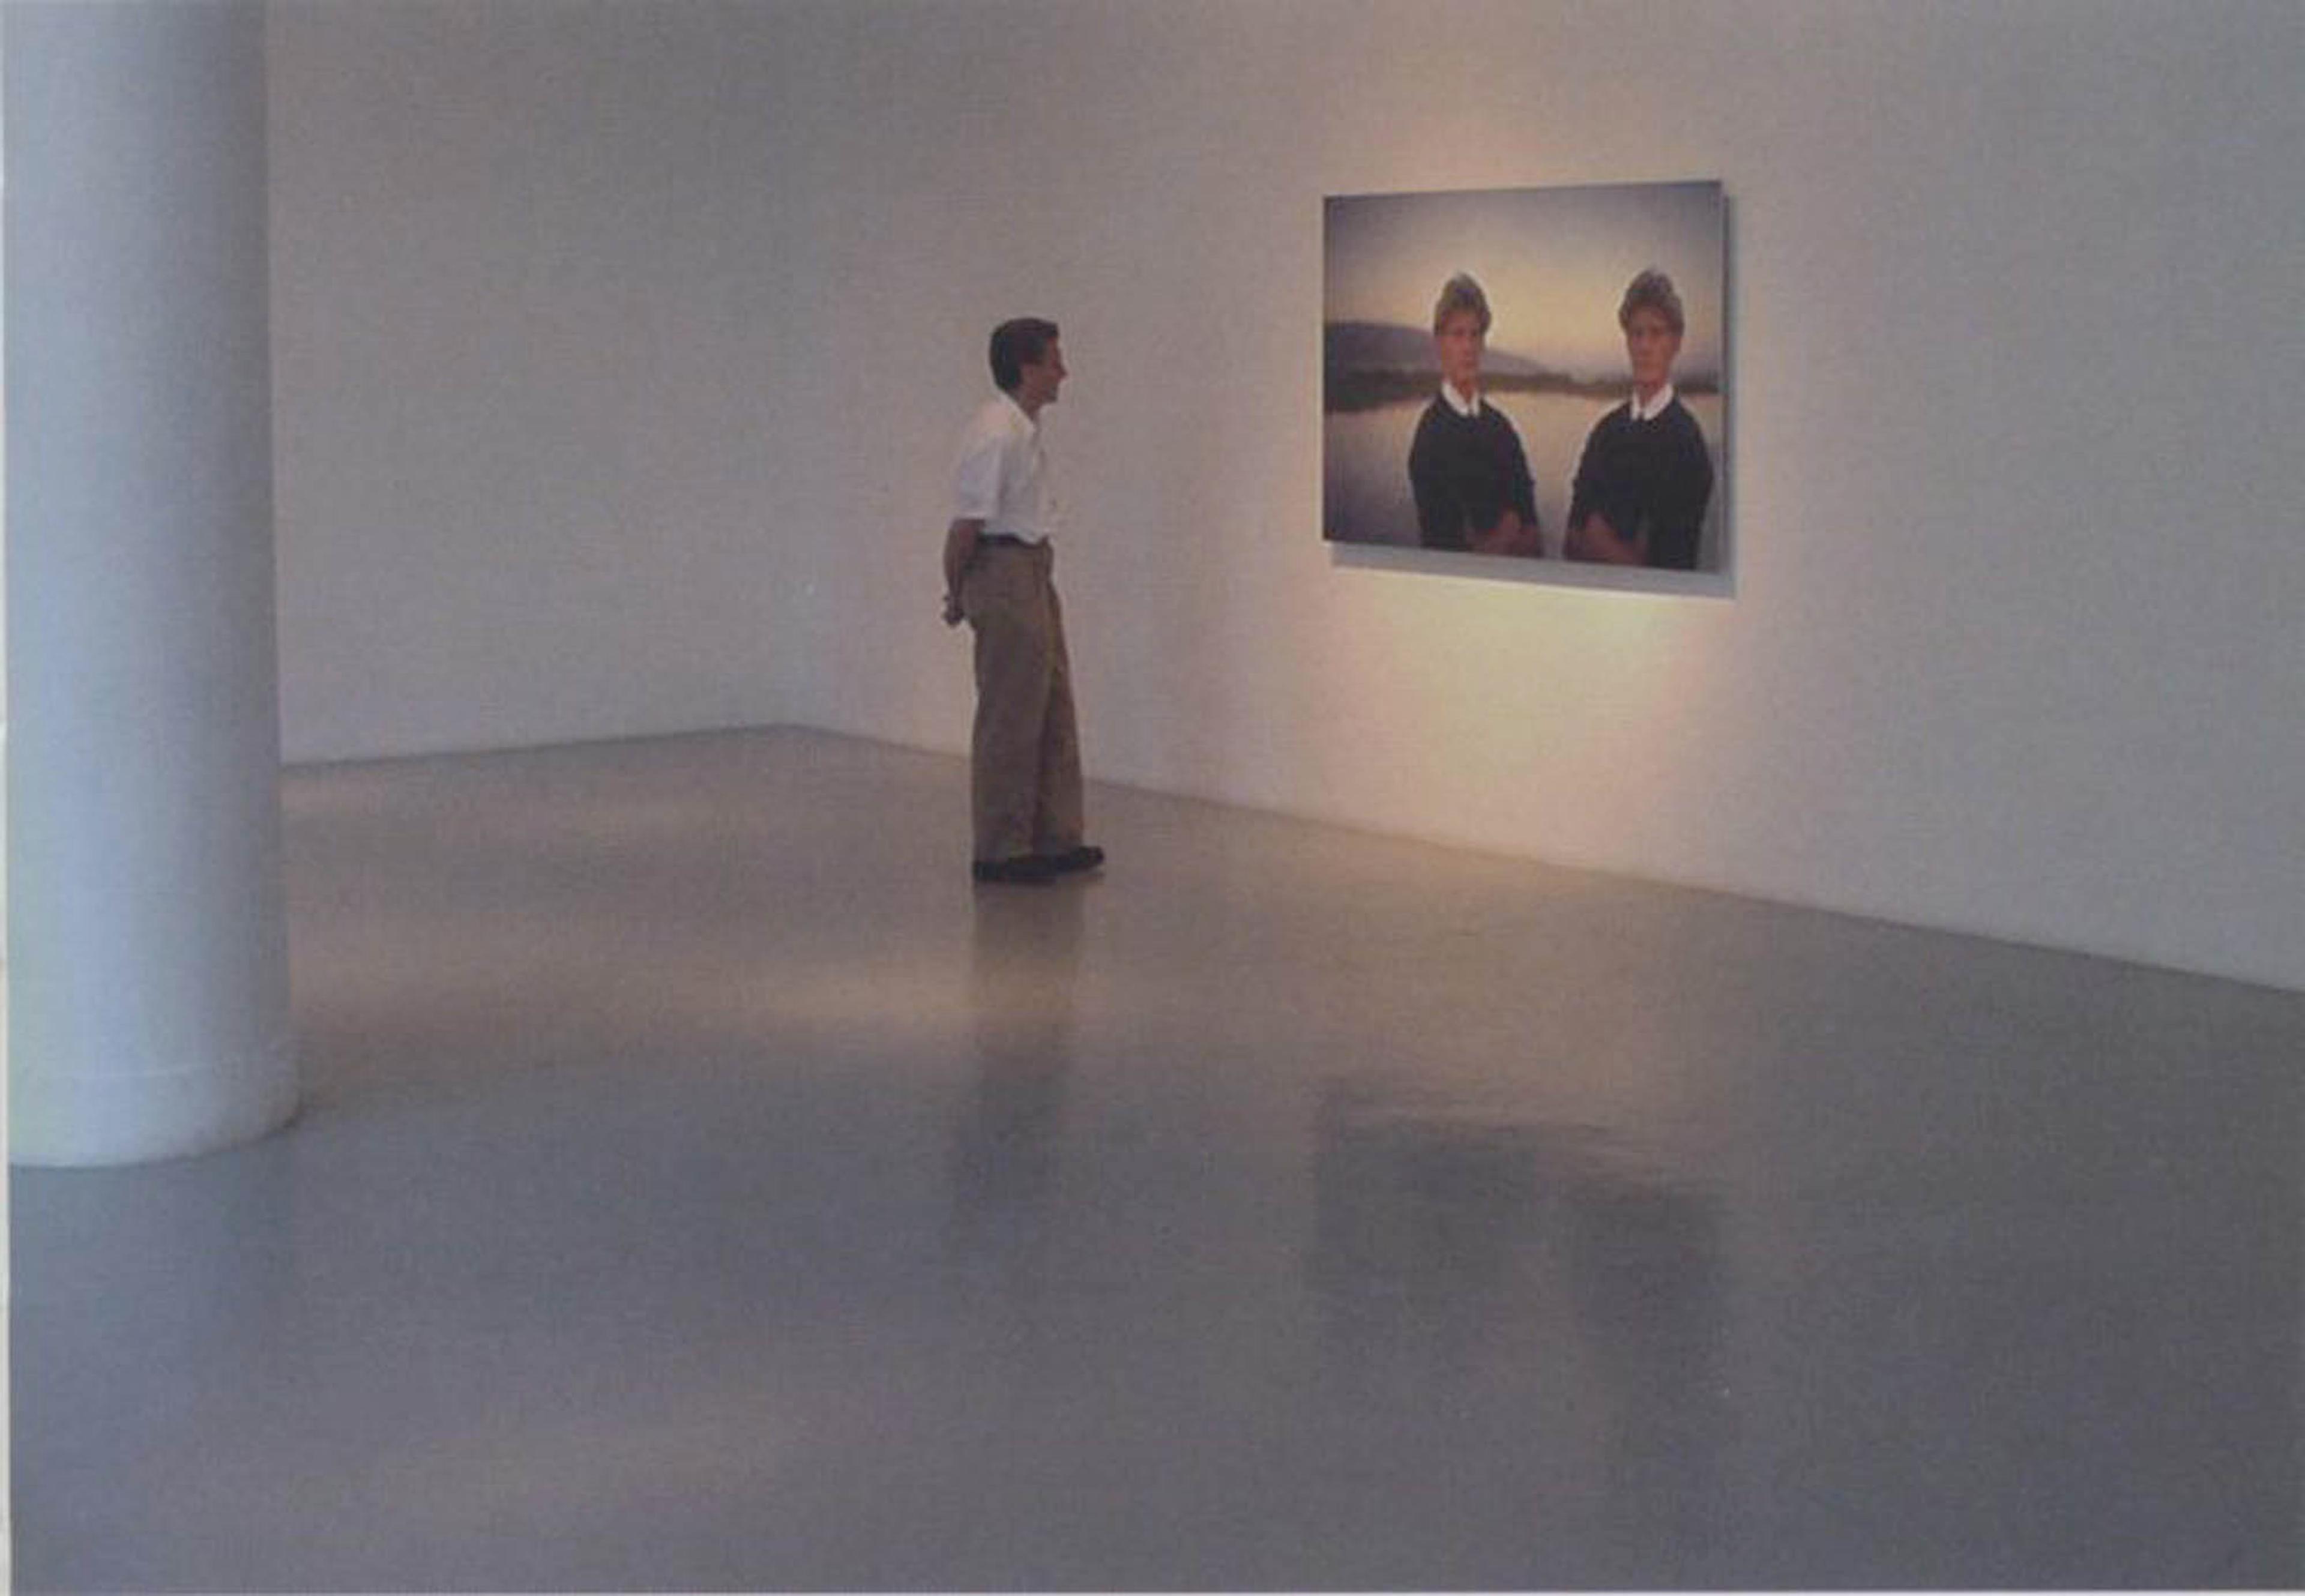 (2001) John Gerrard, Double Portrait: Ryan in LA, 2000, laser direct c-type print mounted on sintra, 203 x 152 cm.